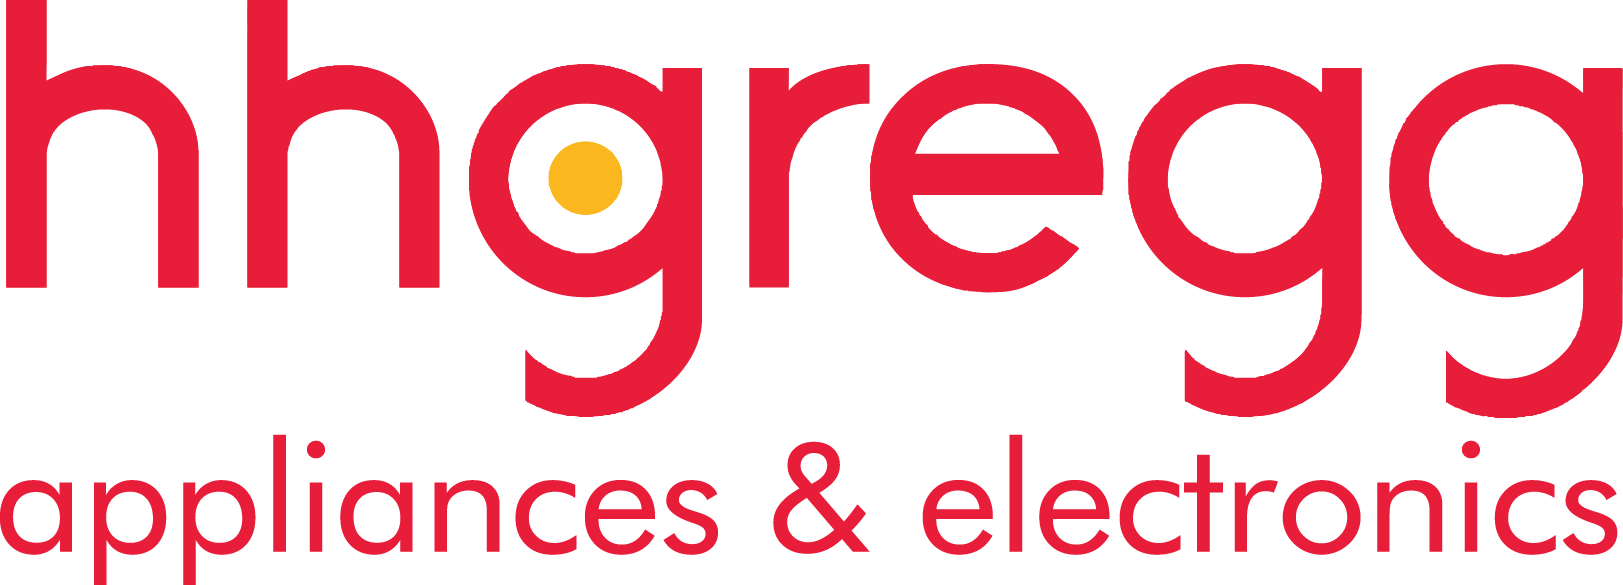 LG's logo